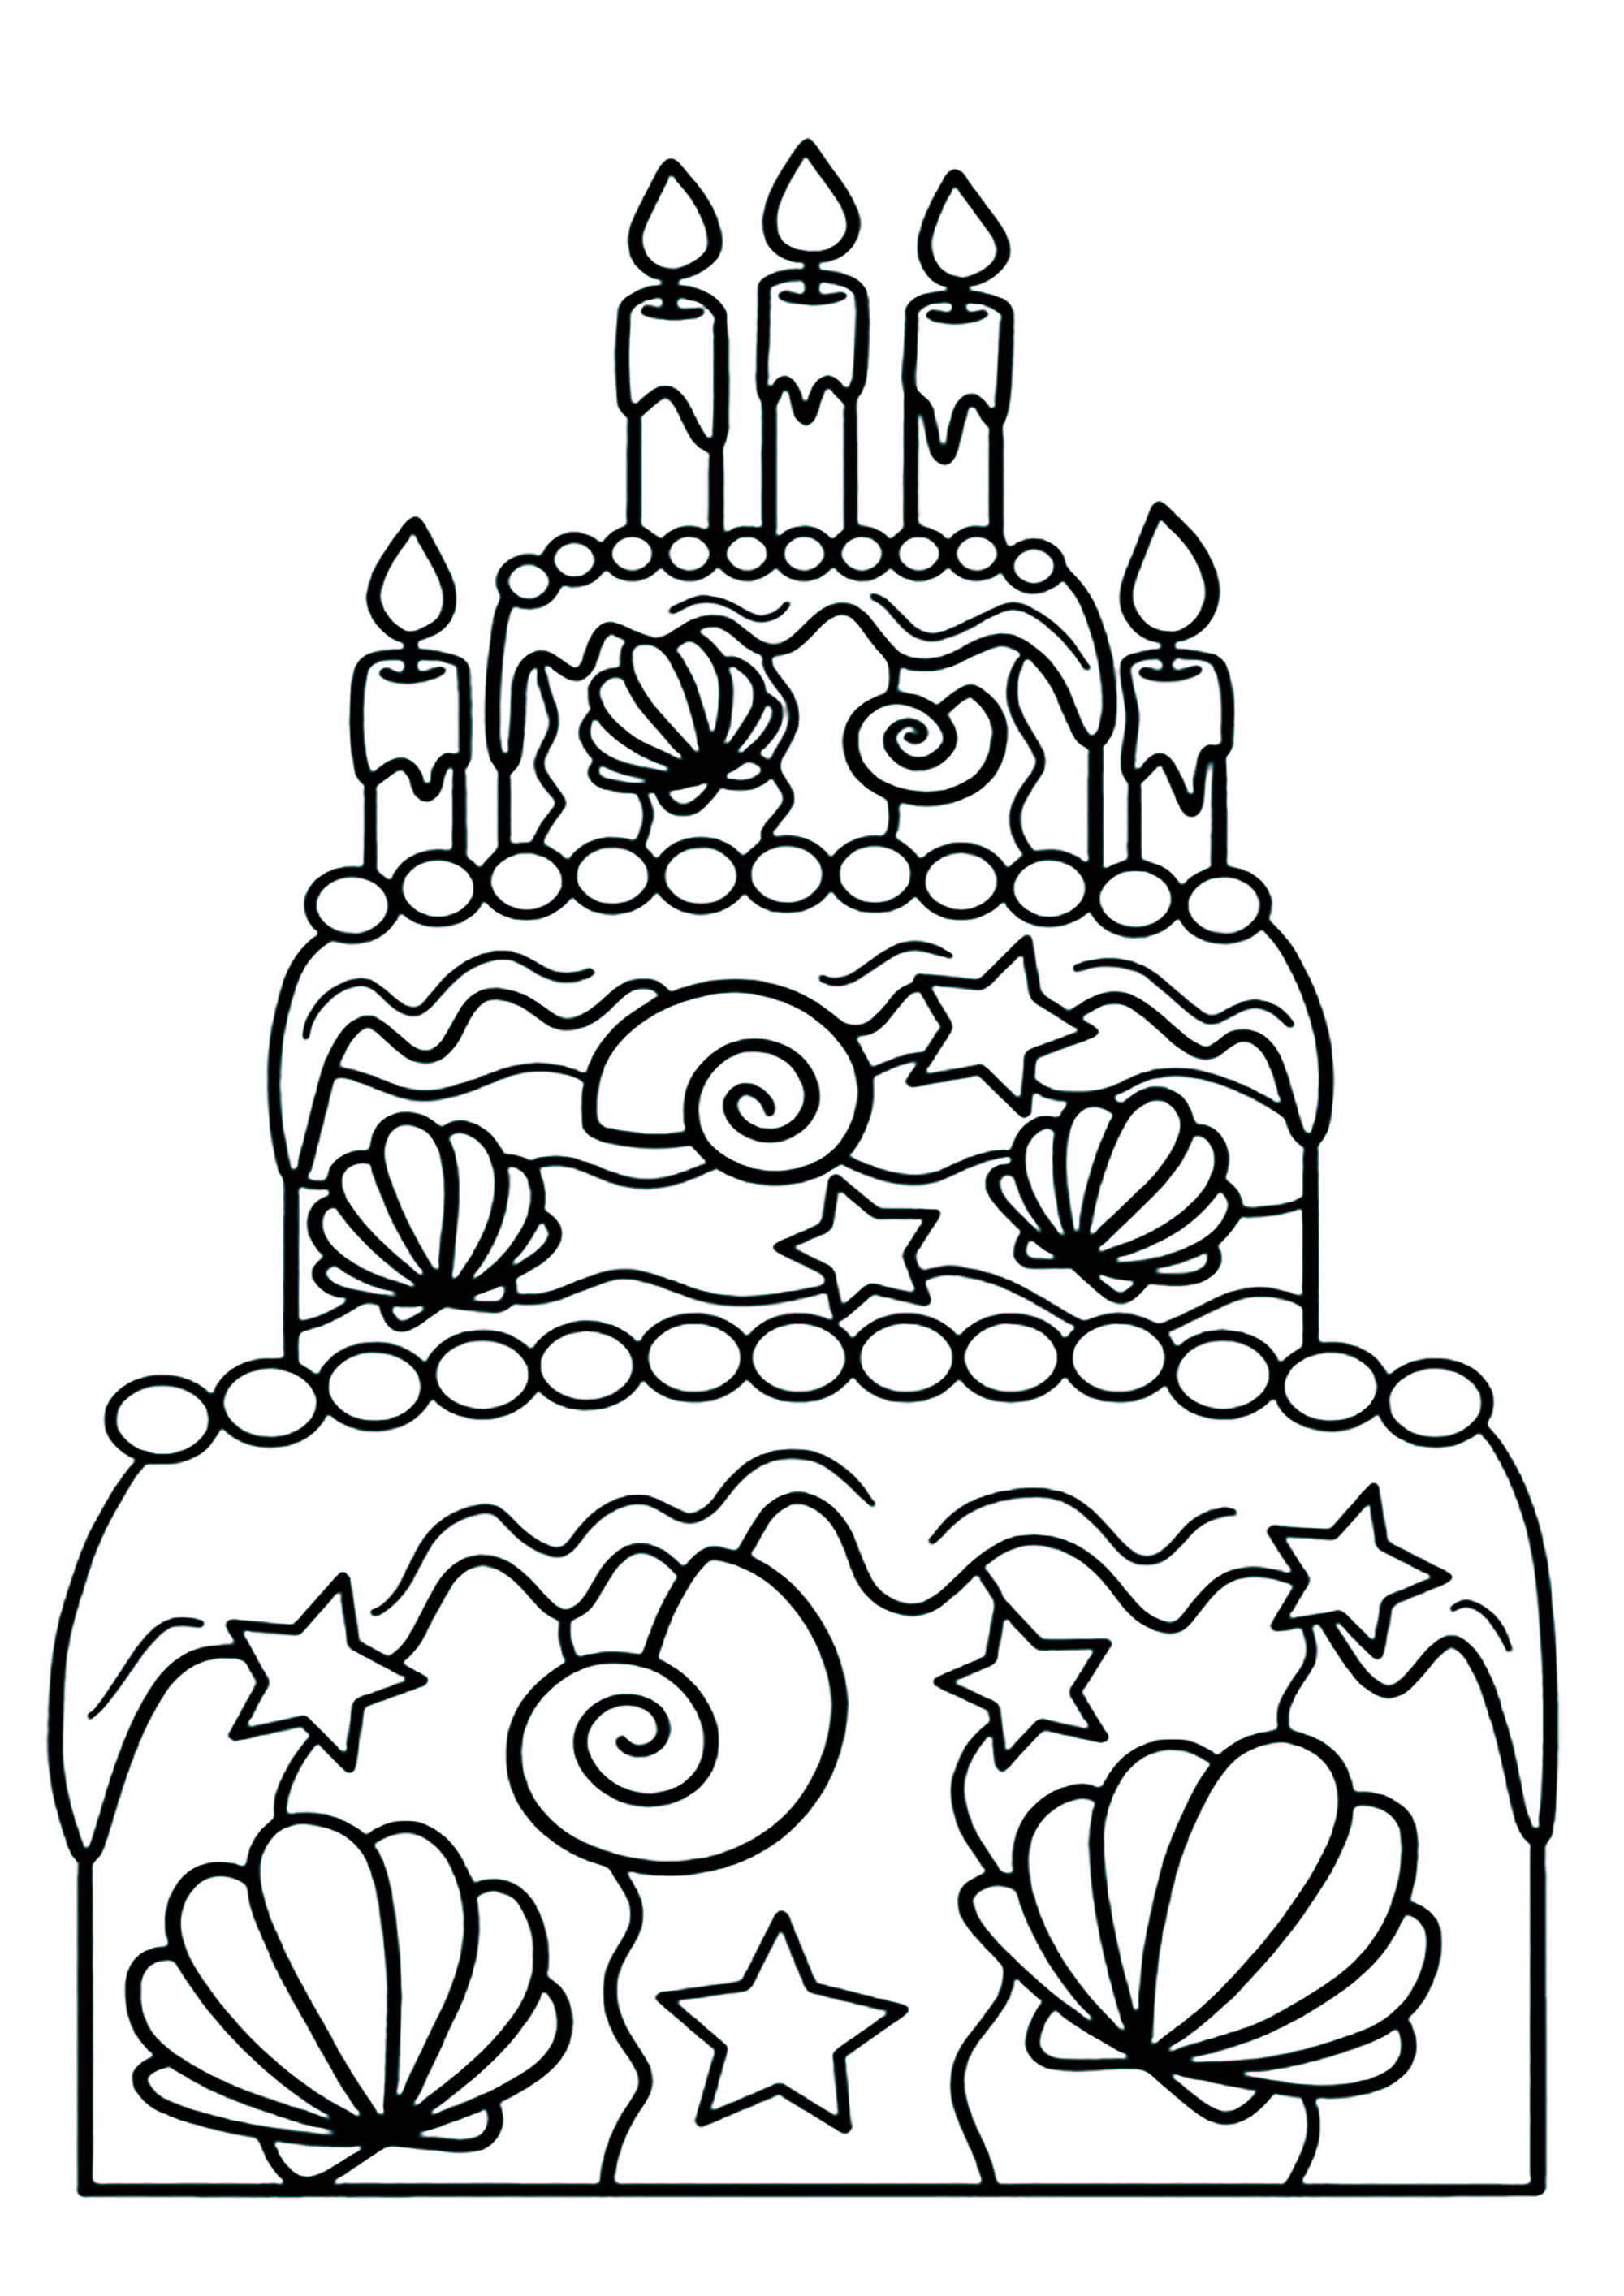 Coloriage d'un gâteau d'anniversaire avec motifs marins. Des coquillages incrustés dans le gateau, c'est original